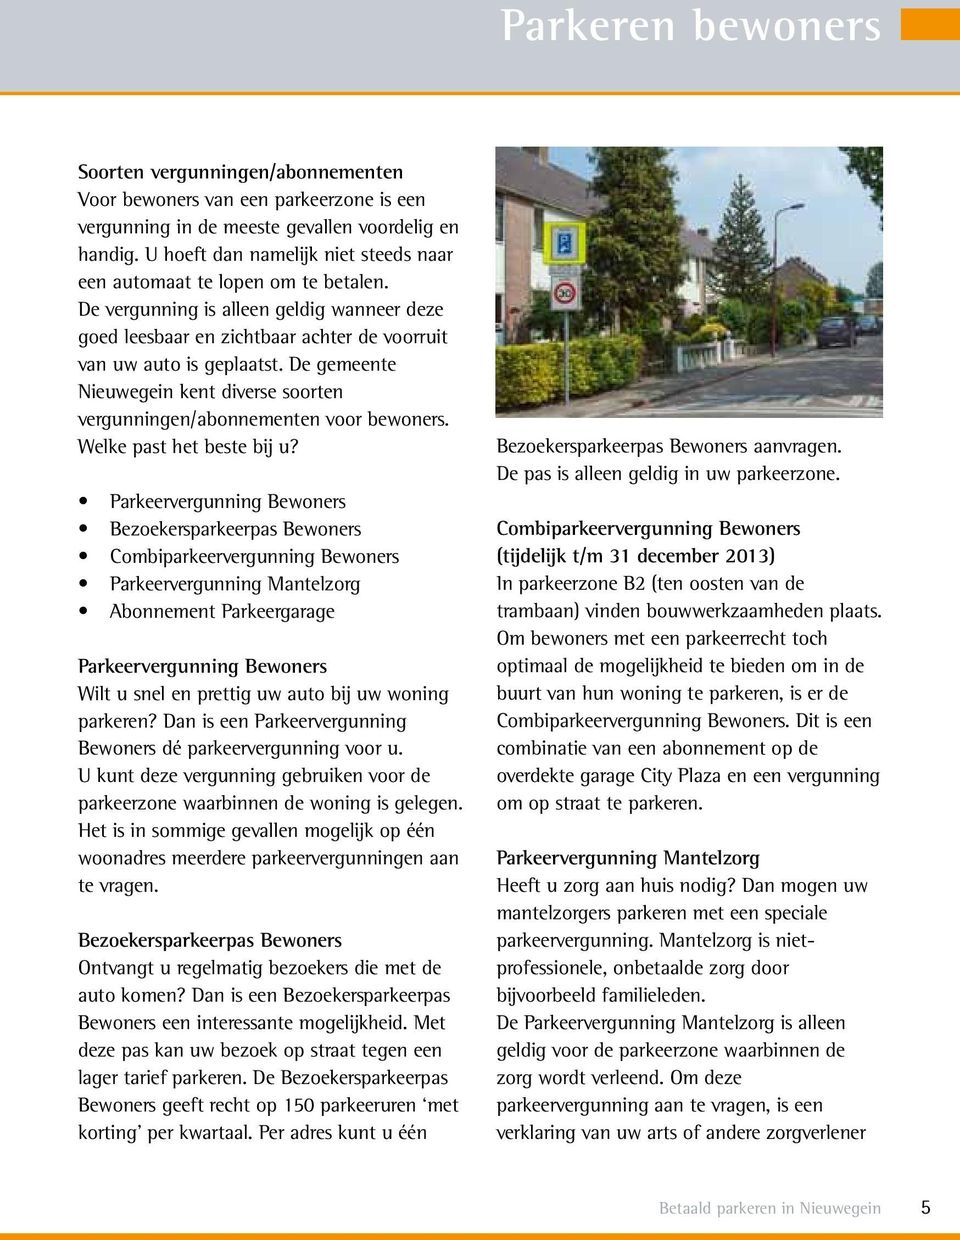 De gemeente Nieuwegein kent diverse soorten vergunningen/abonnementen voor bewoners. Welke past het beste bij u?